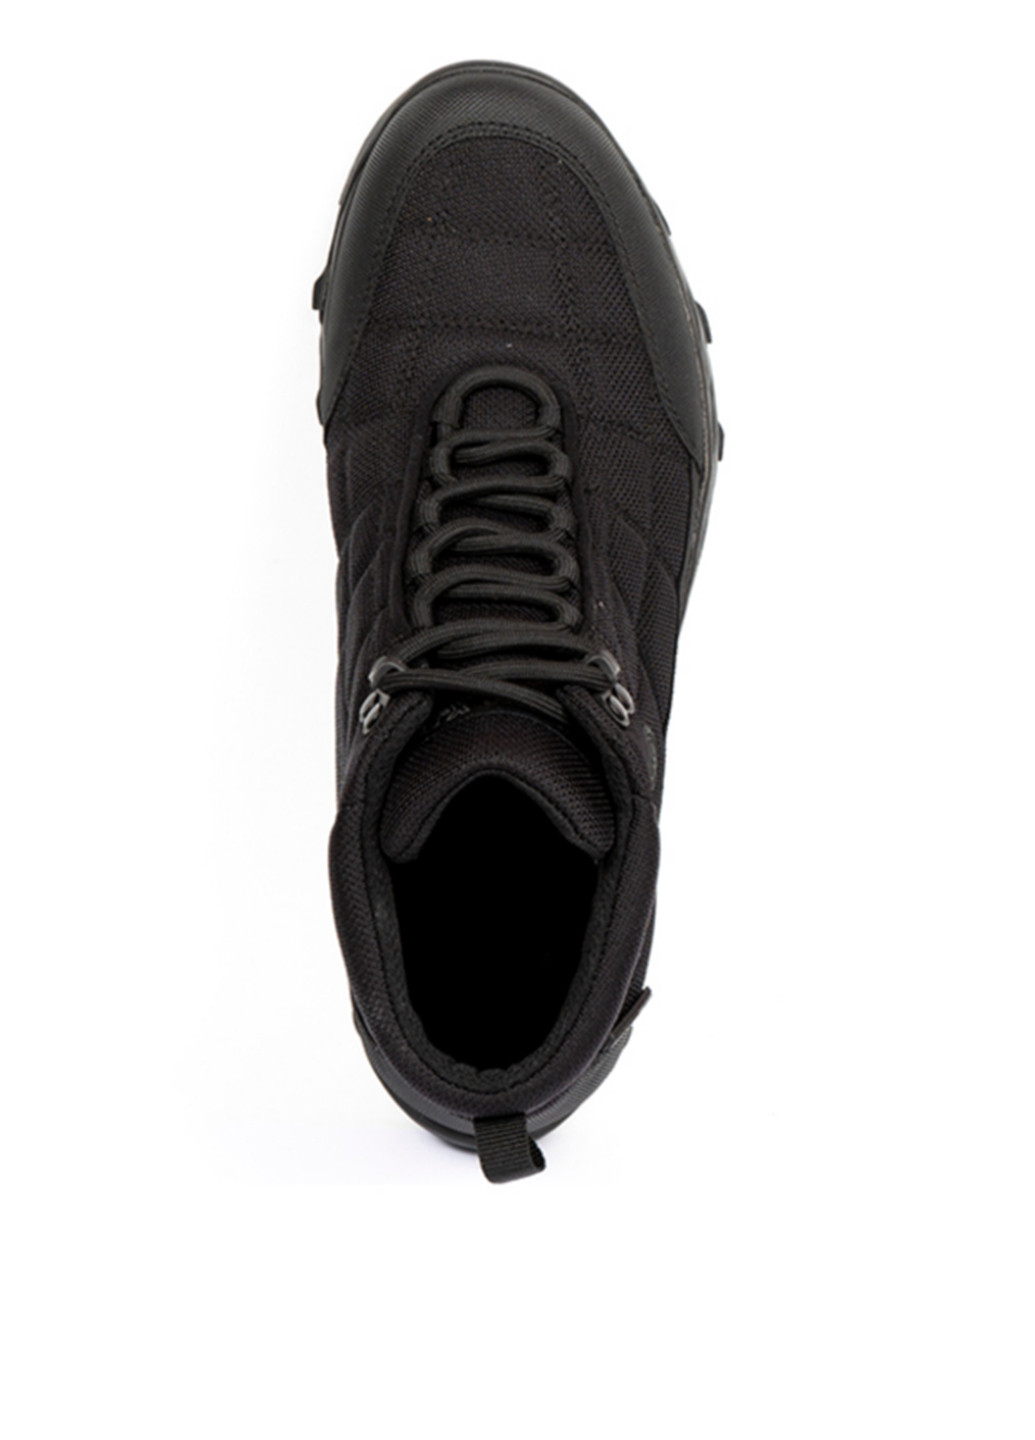 Черные осенние ботинки Greyder